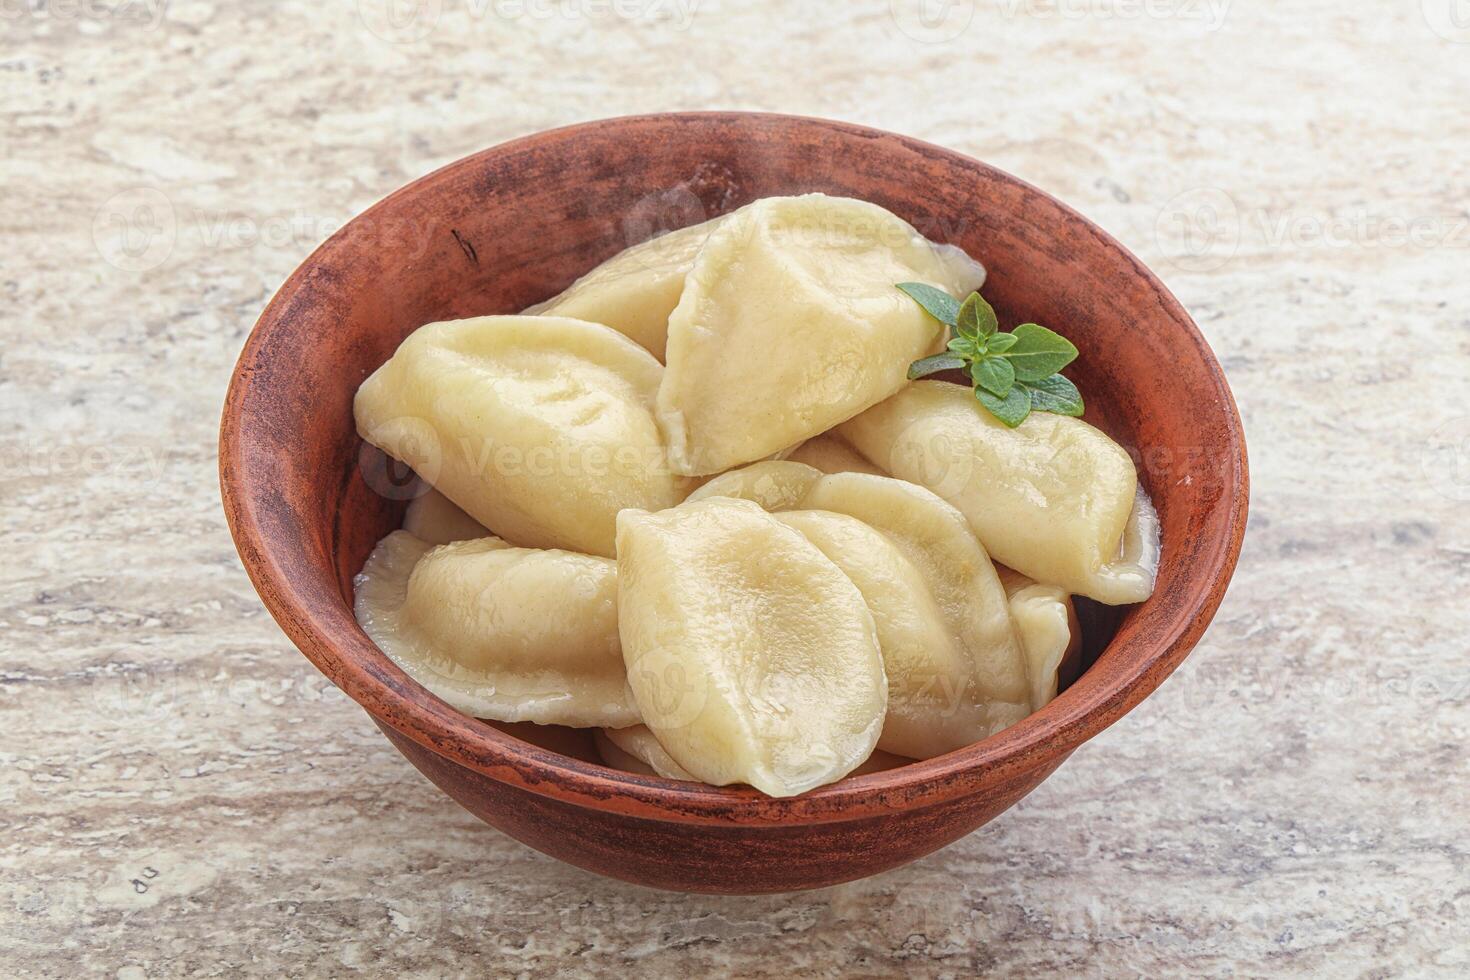 vareniki traditionnel russe - boulettes de pommes de terre photo